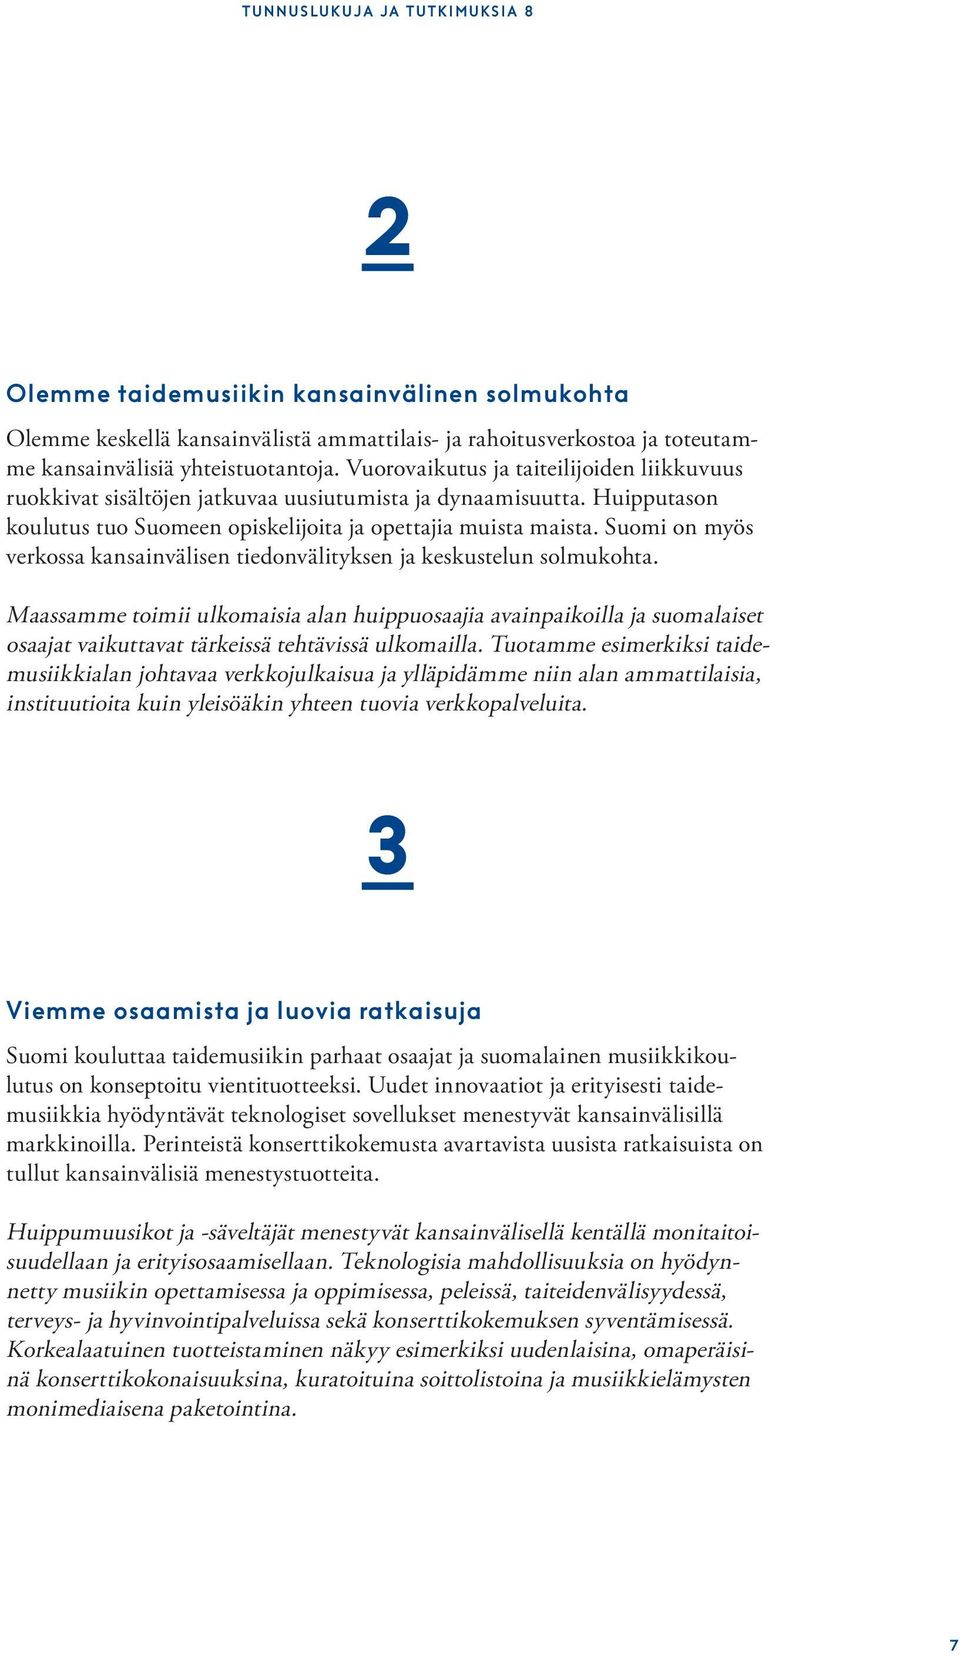 Suomi on myös verkossa kansainvälisen tiedonvälityksen ja keskustelun solmukohta.